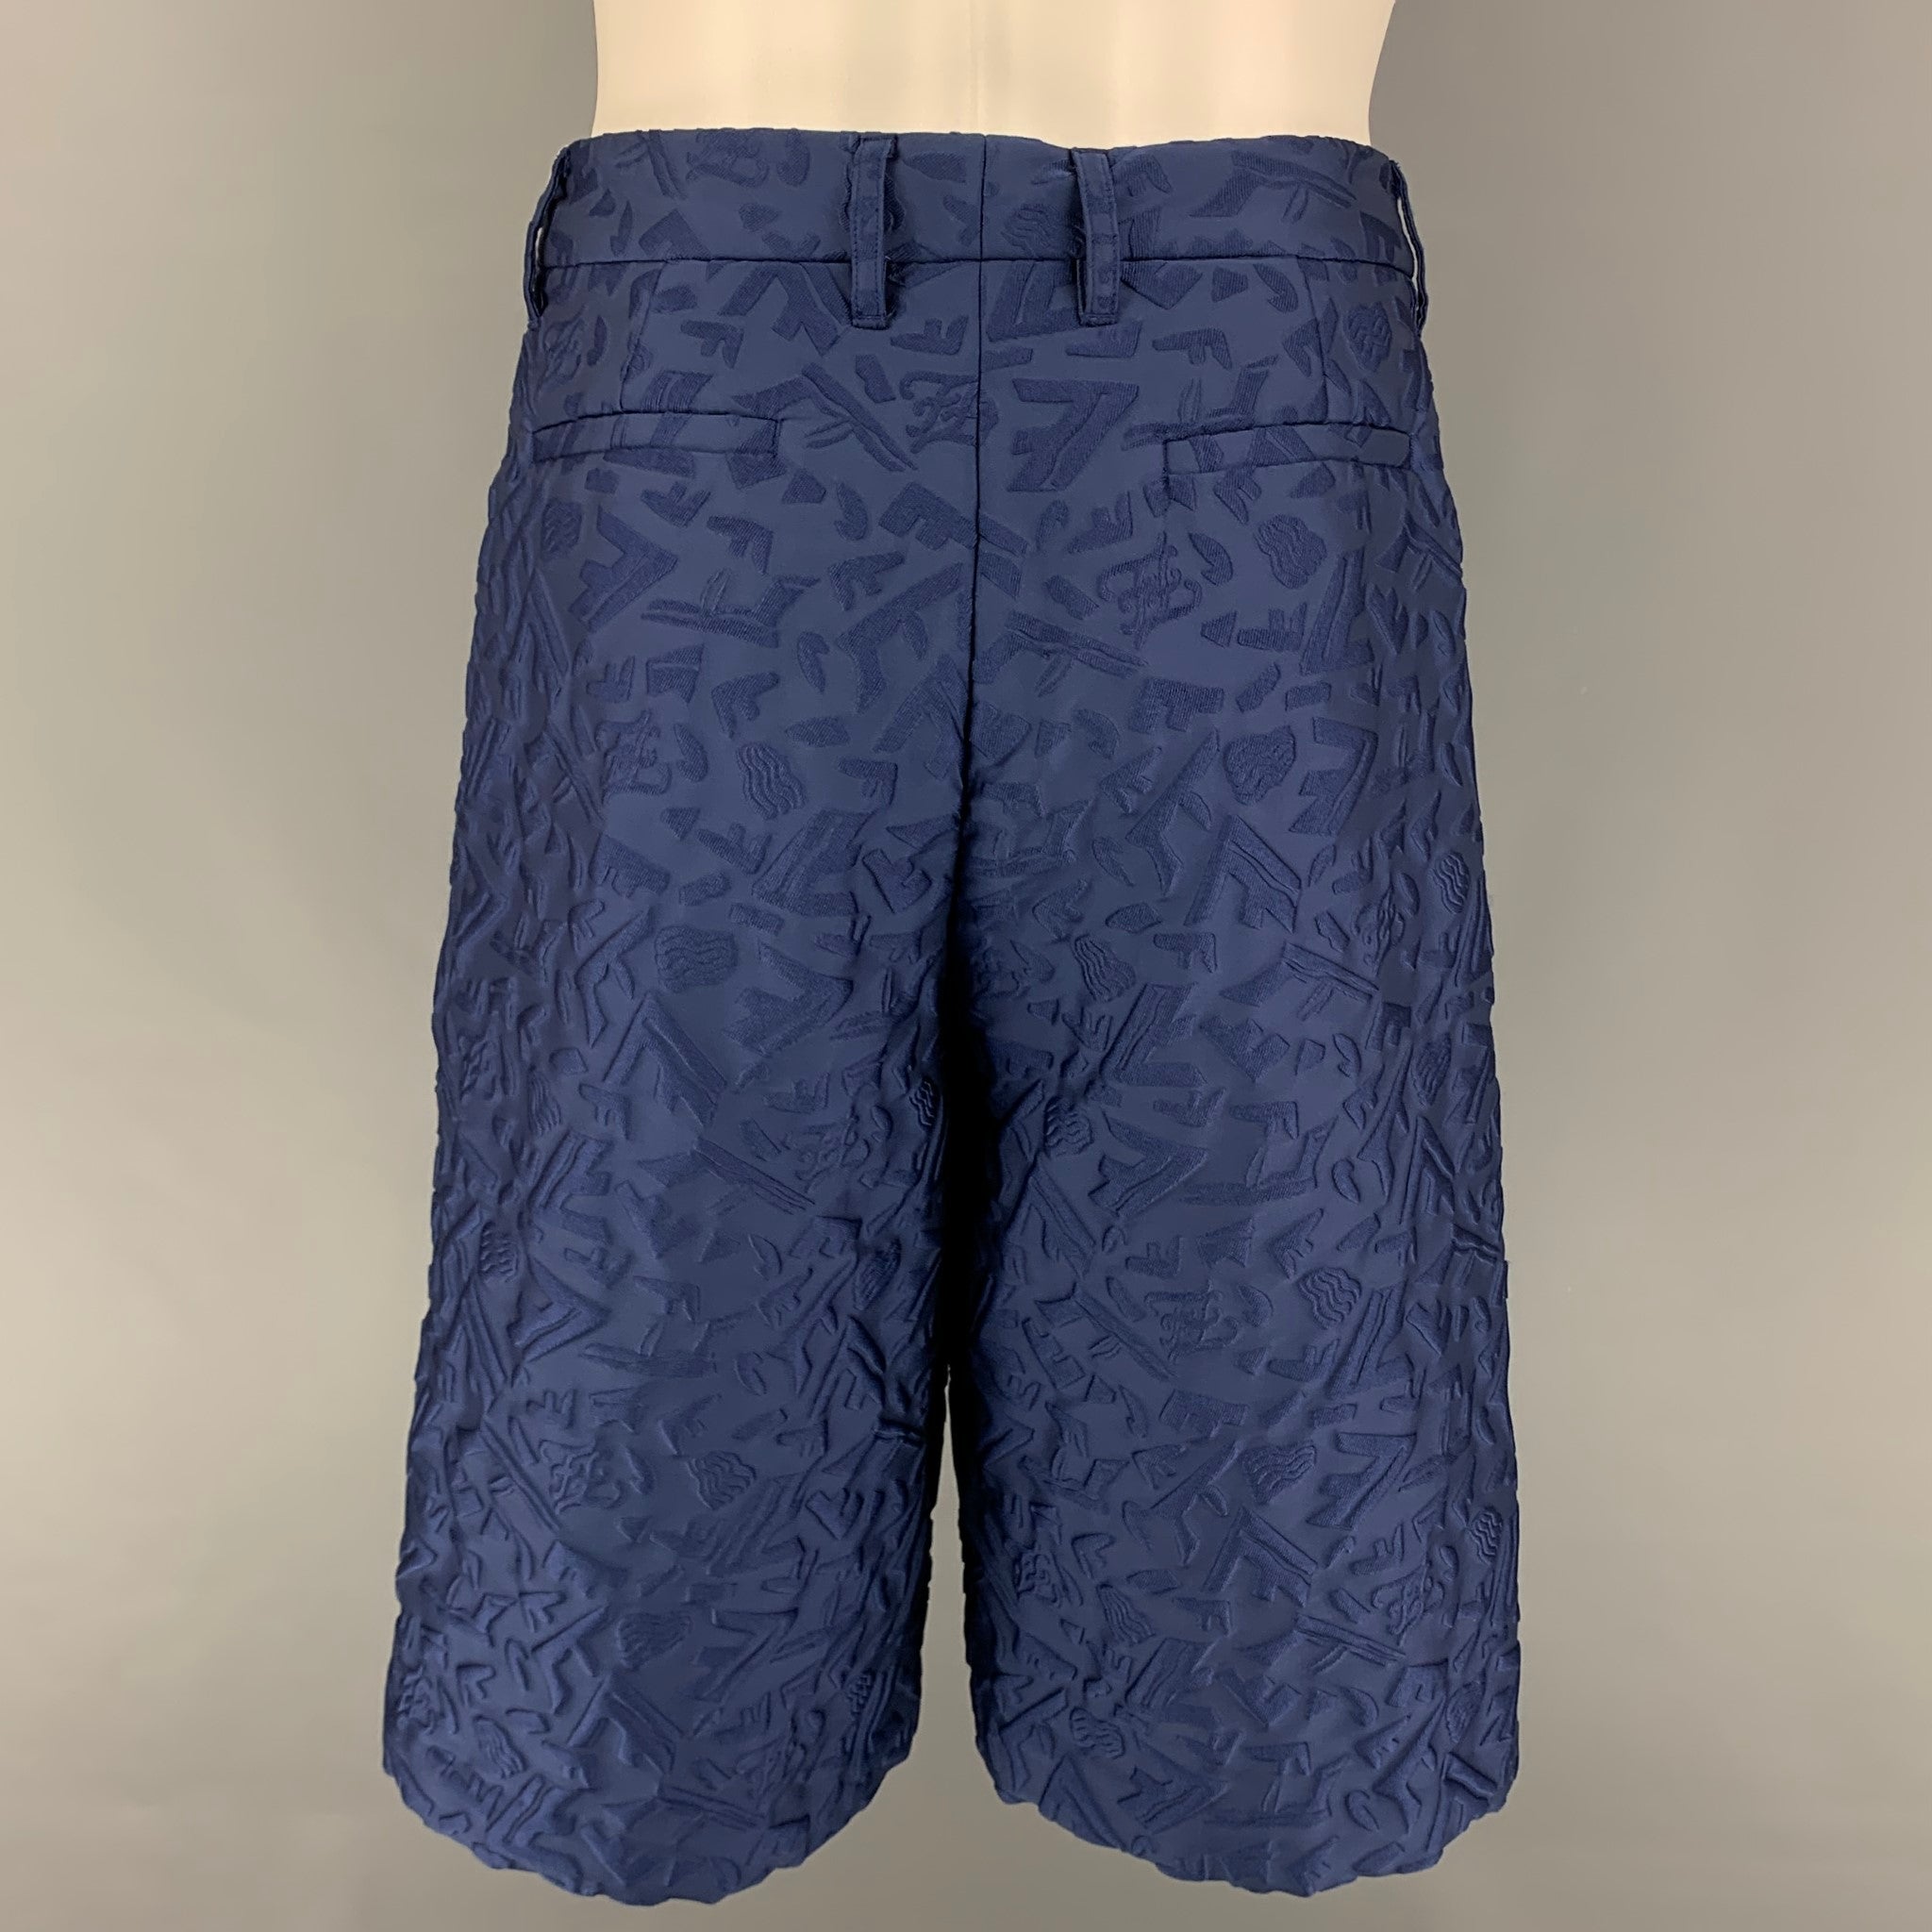 Louis Vuitton 3D Monogram Jogging Shorts Blue Grey. Size 36